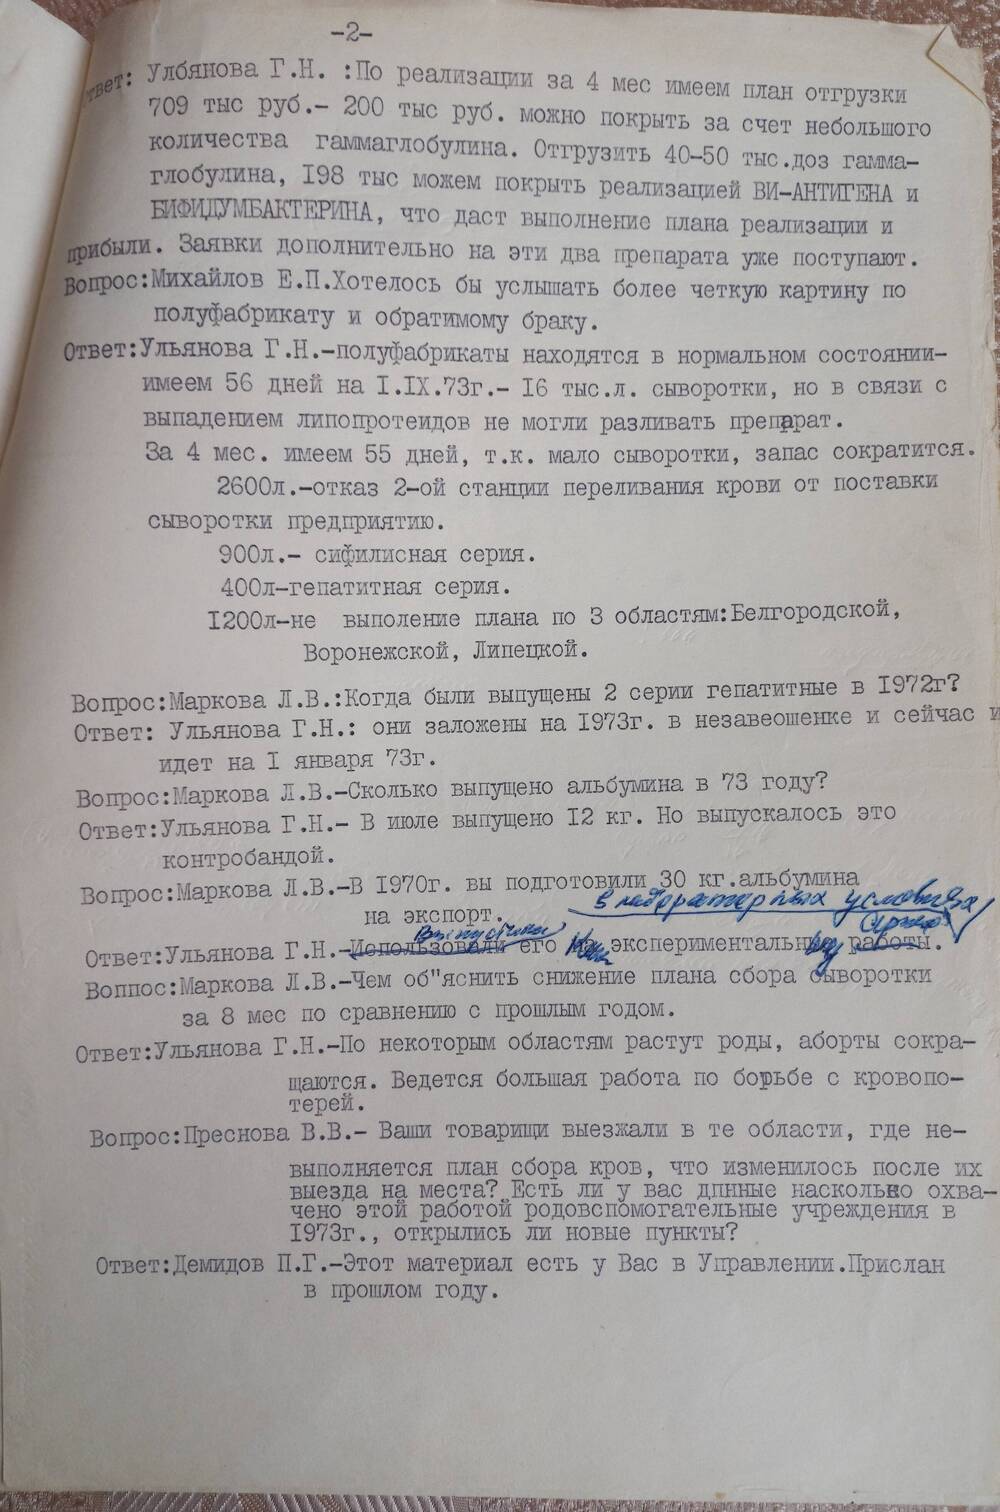 Протокол совещания у начальника управления  О ходе выполнения плана производства 1973 г. Московского НИИЭМ